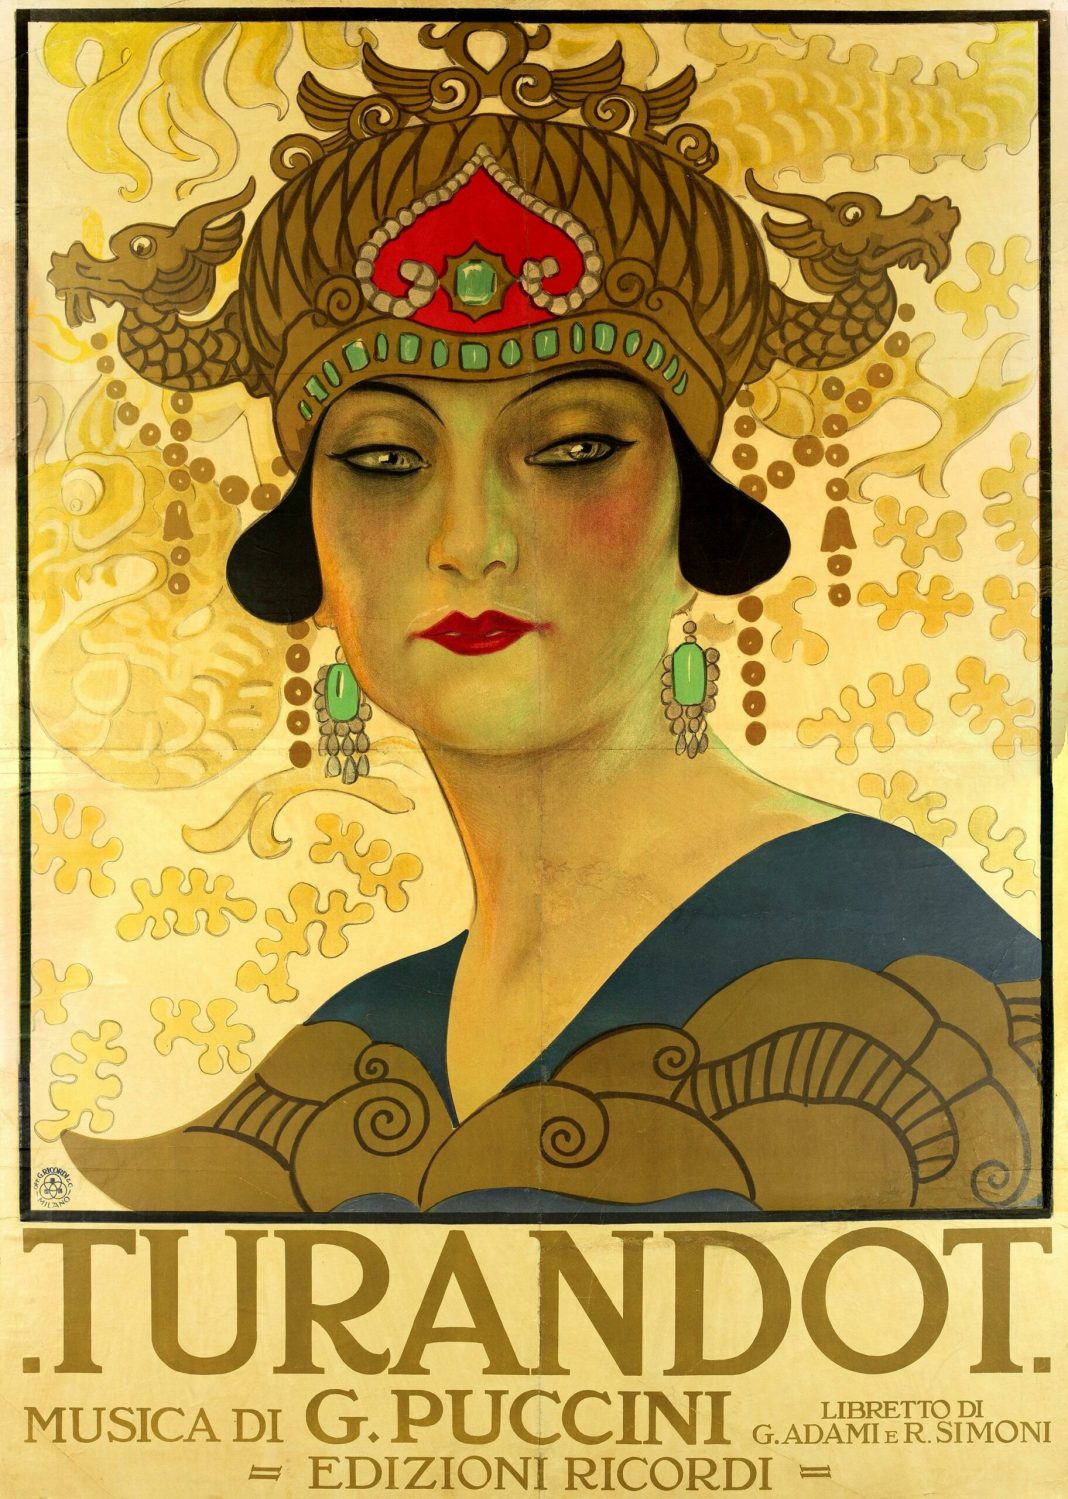 Turandot e l’Oriente fantastico di Puccini, Chini e Carambahttps://www.exibart.com/repository/media/2021/05/9.-manifesto-turandot-scaled-1068x1499.jpg